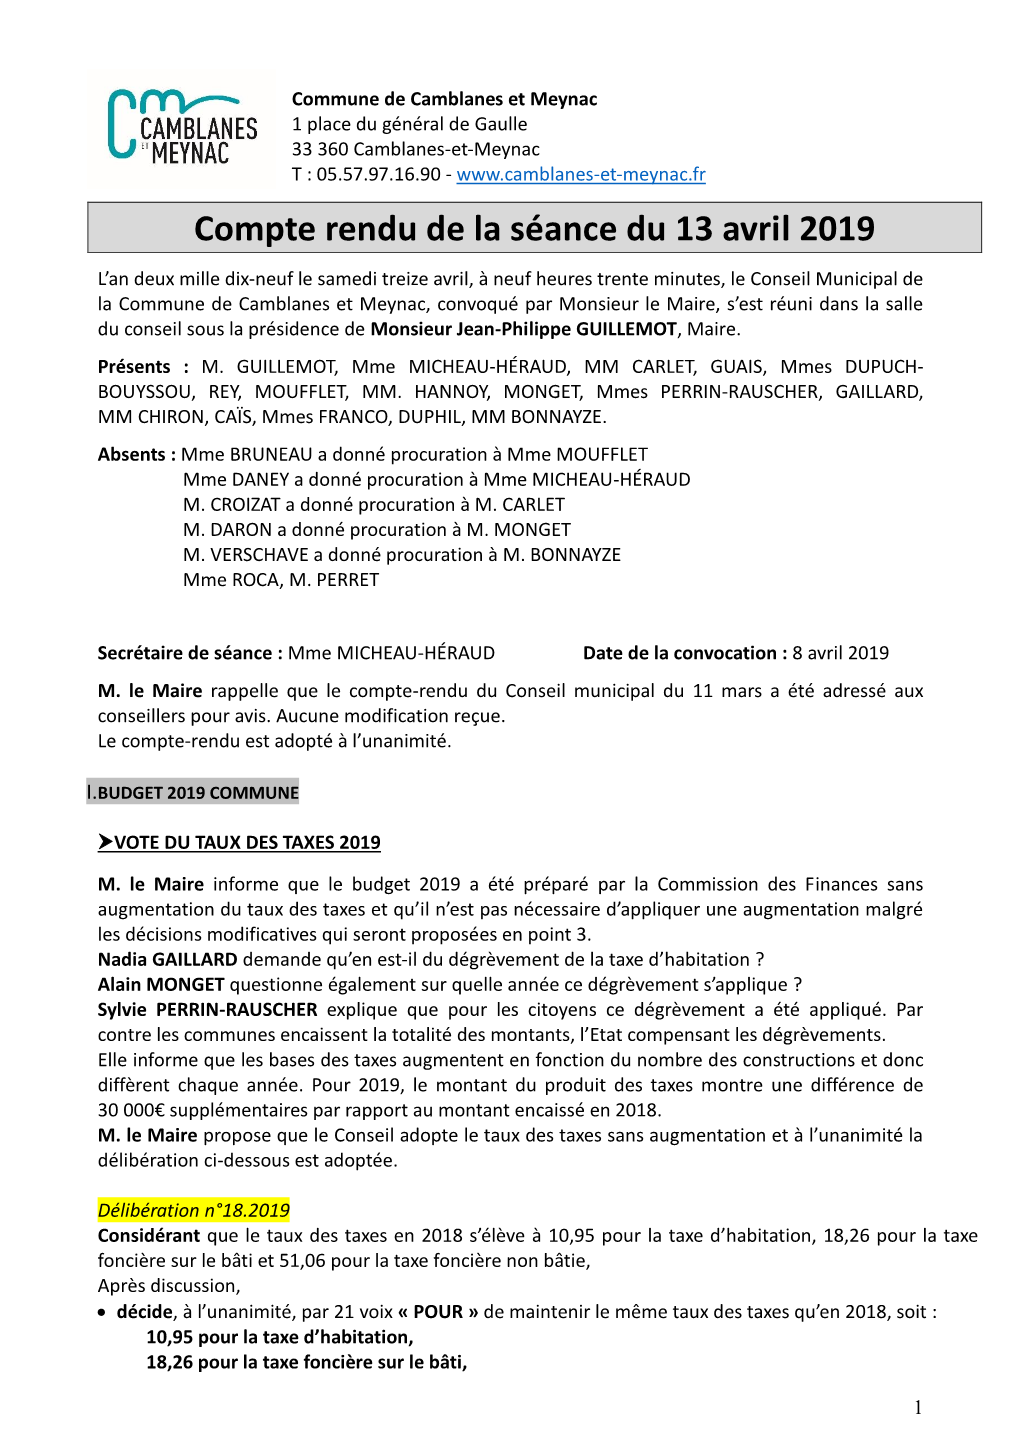 Compte Rendu De La Séance Du 13 Avril 2019